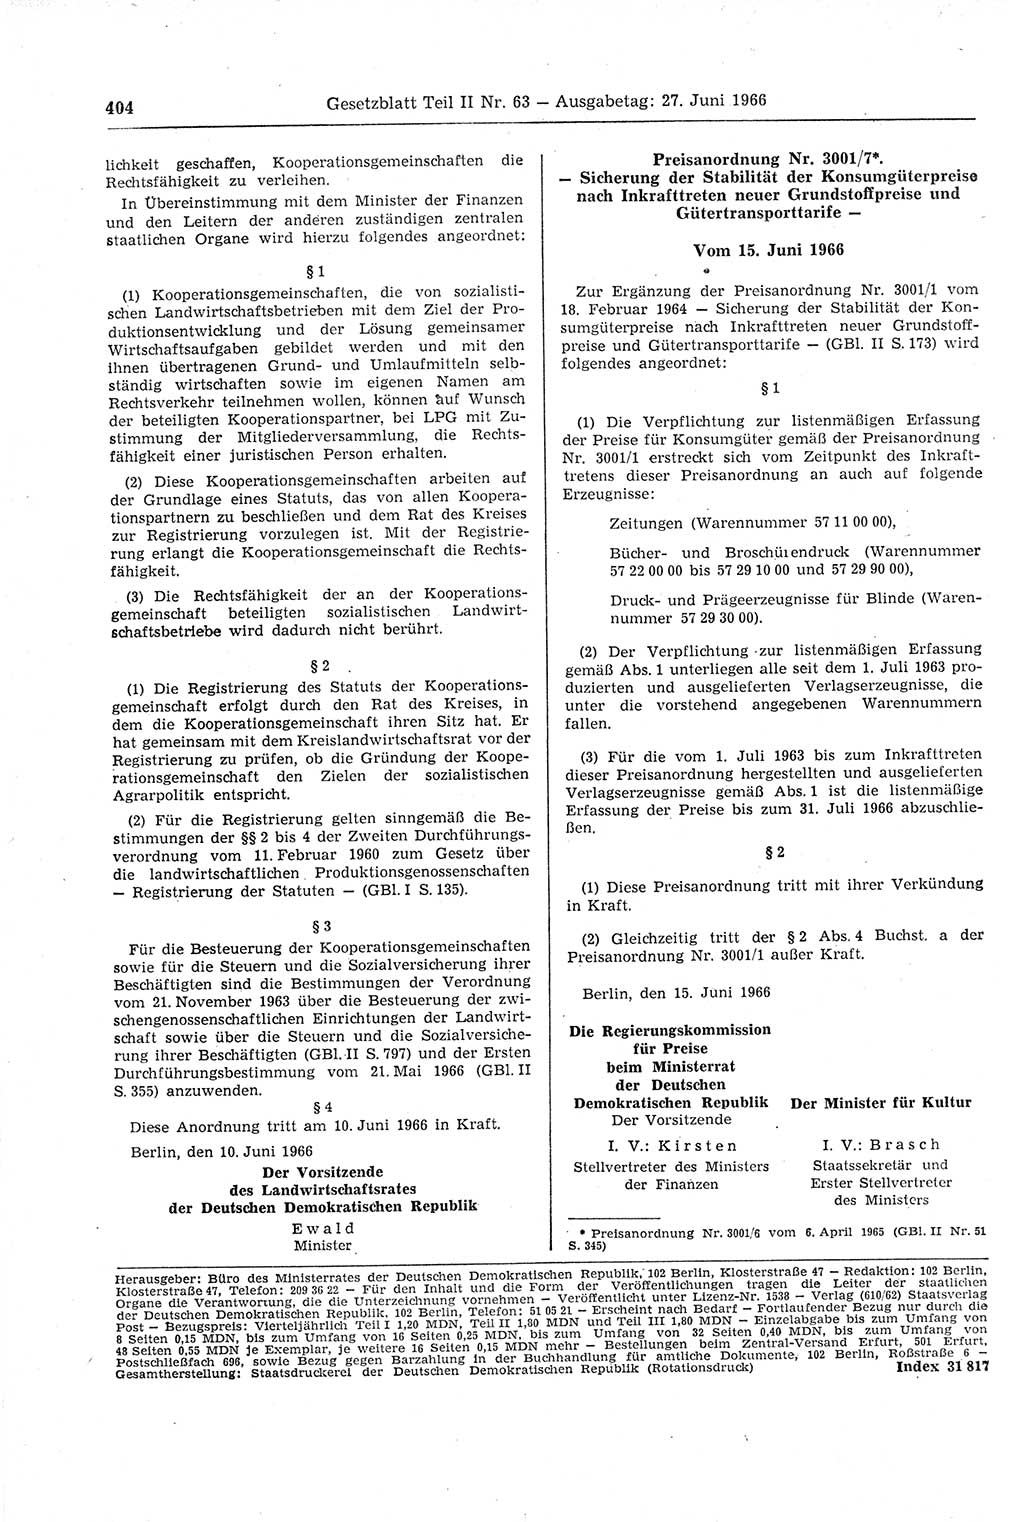 Gesetzblatt (GBl.) der Deutschen Demokratischen Republik (DDR) Teil ⅠⅠ 1966, Seite 404 (GBl. DDR ⅠⅠ 1966, S. 404)